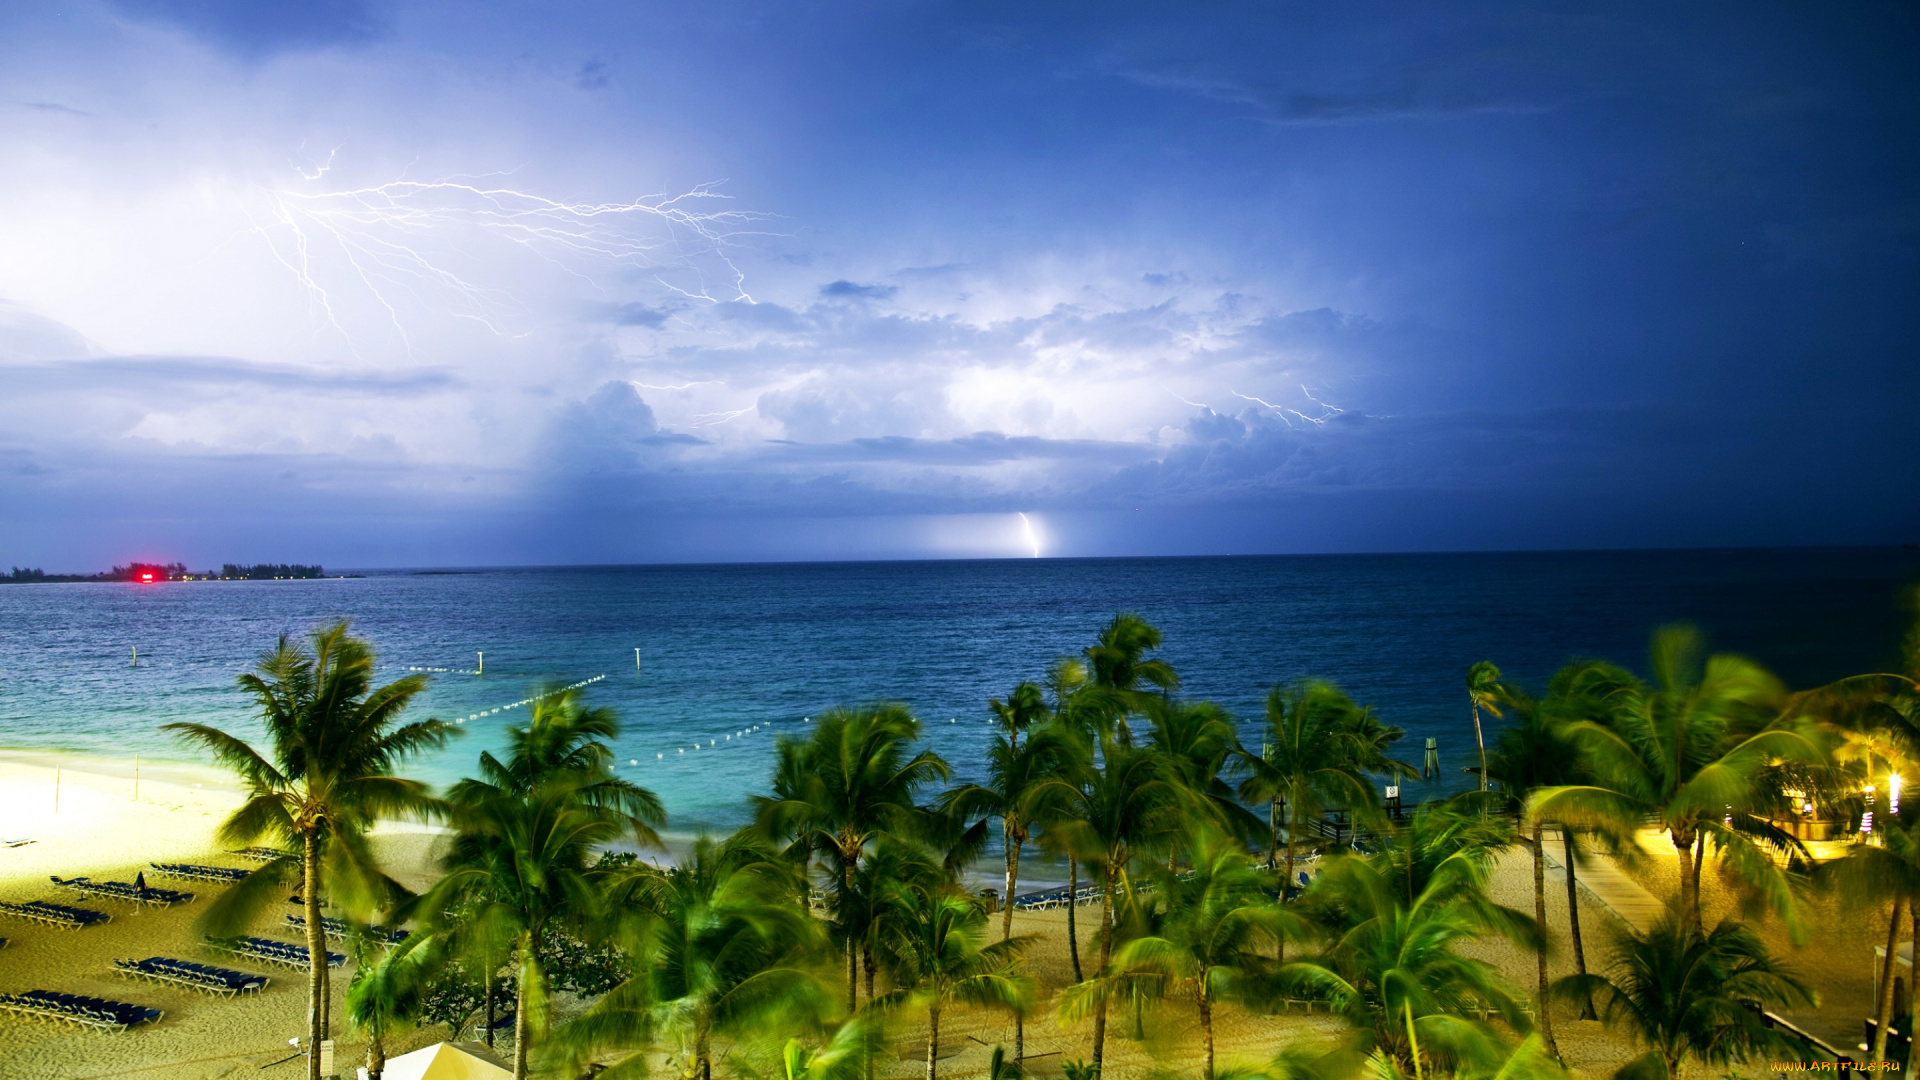 природа, молния, , гроза, горизонт, пальмы, пасмурно, молнии, песок, пляж, побережье, море, тропики, багамы, bahamas, тучи